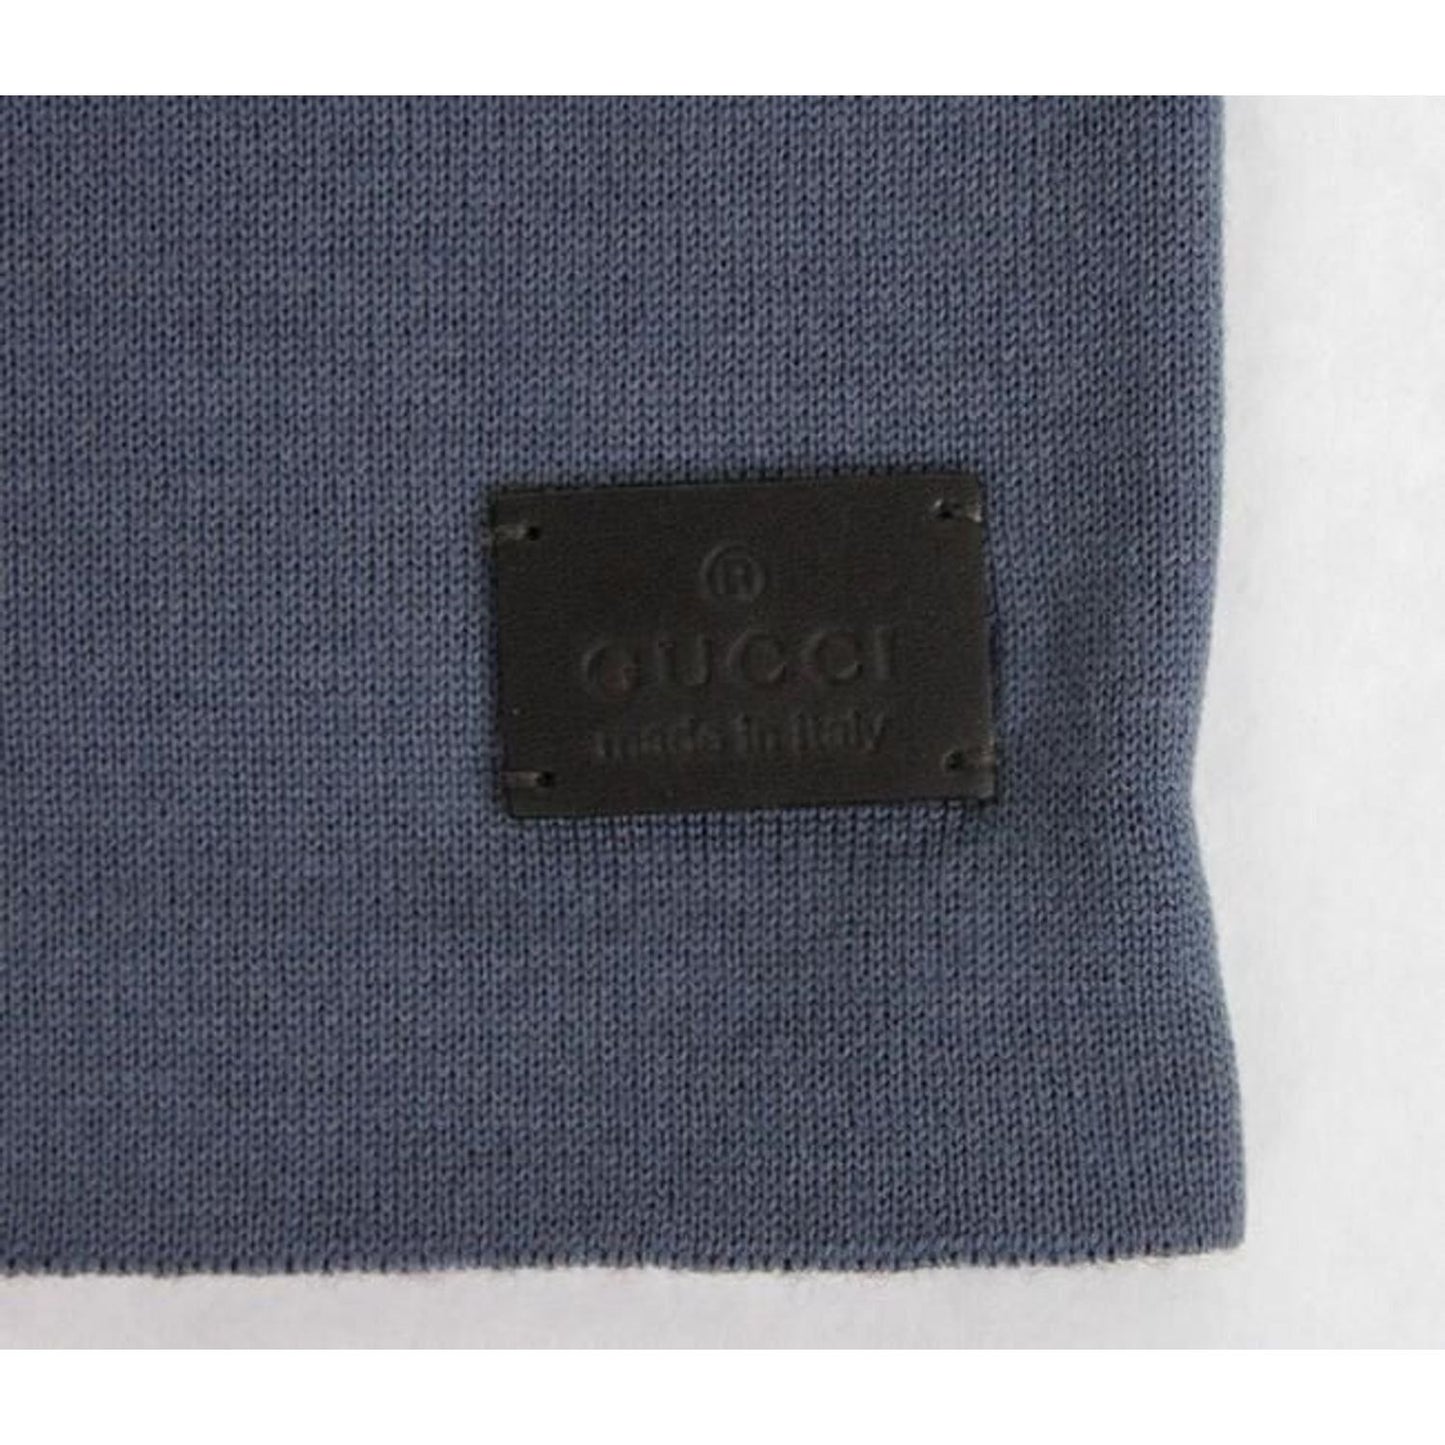 Gucci Unisex Burgundy Blue Wool Beanie Medium Knit Cap unisex-burgundy-blue-wool-beanie-medium-knit-cap 353999-2-468451d7-296.jpg